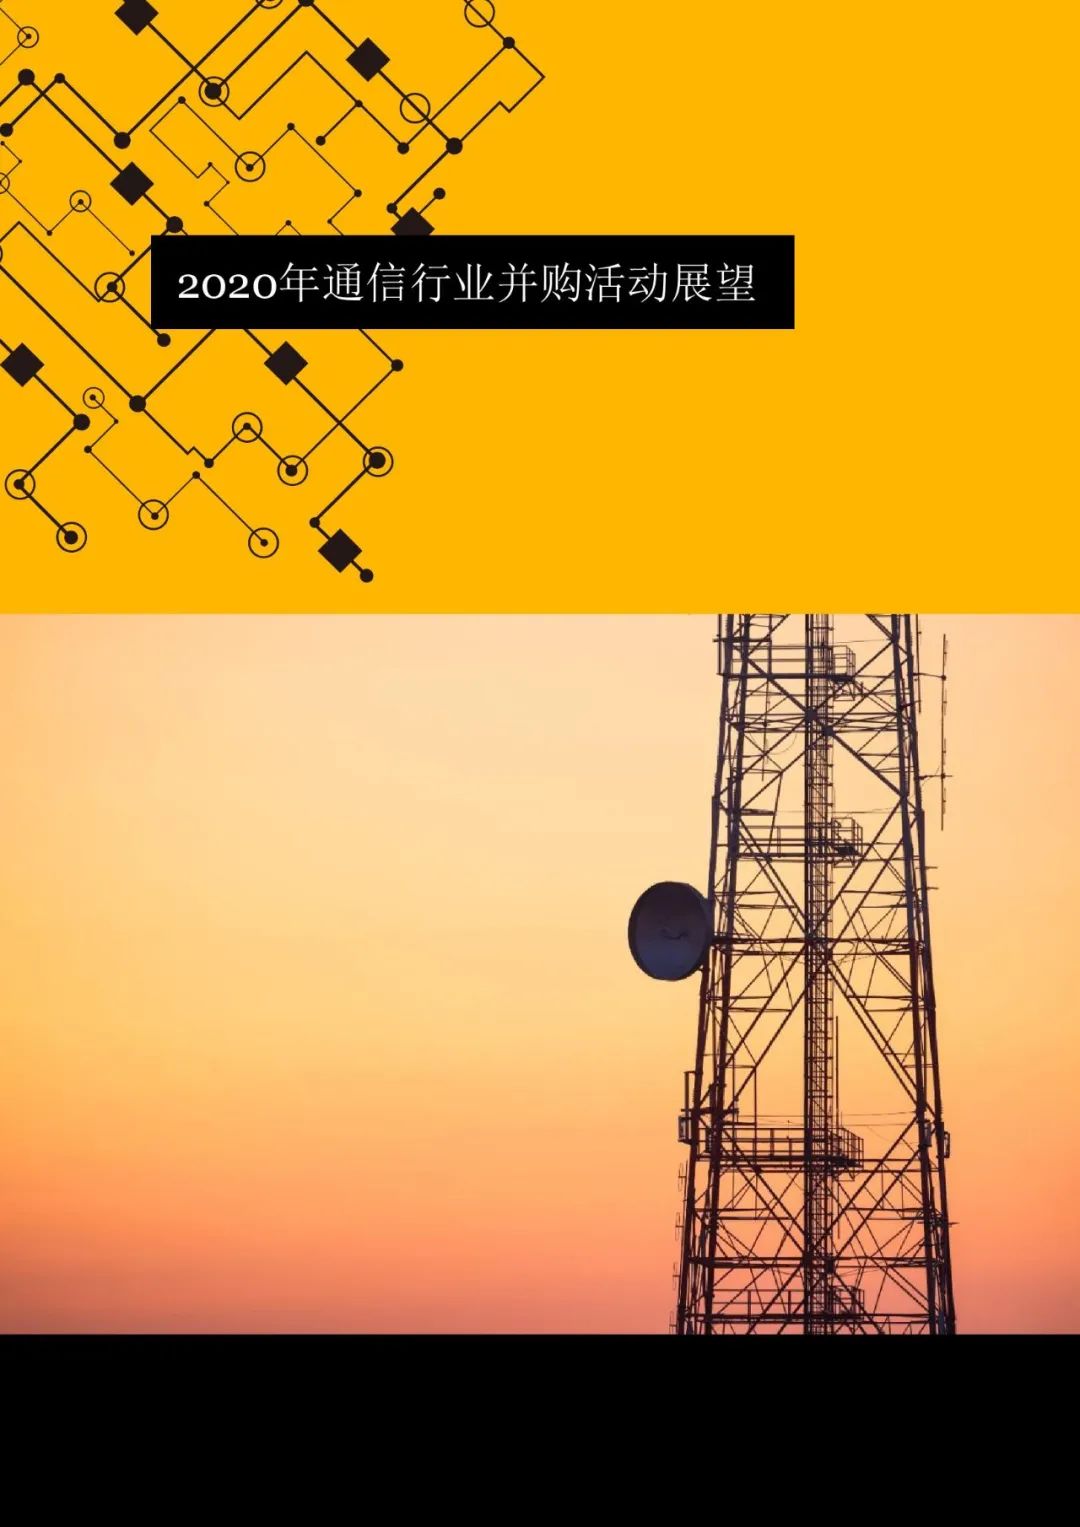 上海 5G 手机研发中心：引领未来通信时代的创新基地  第8张